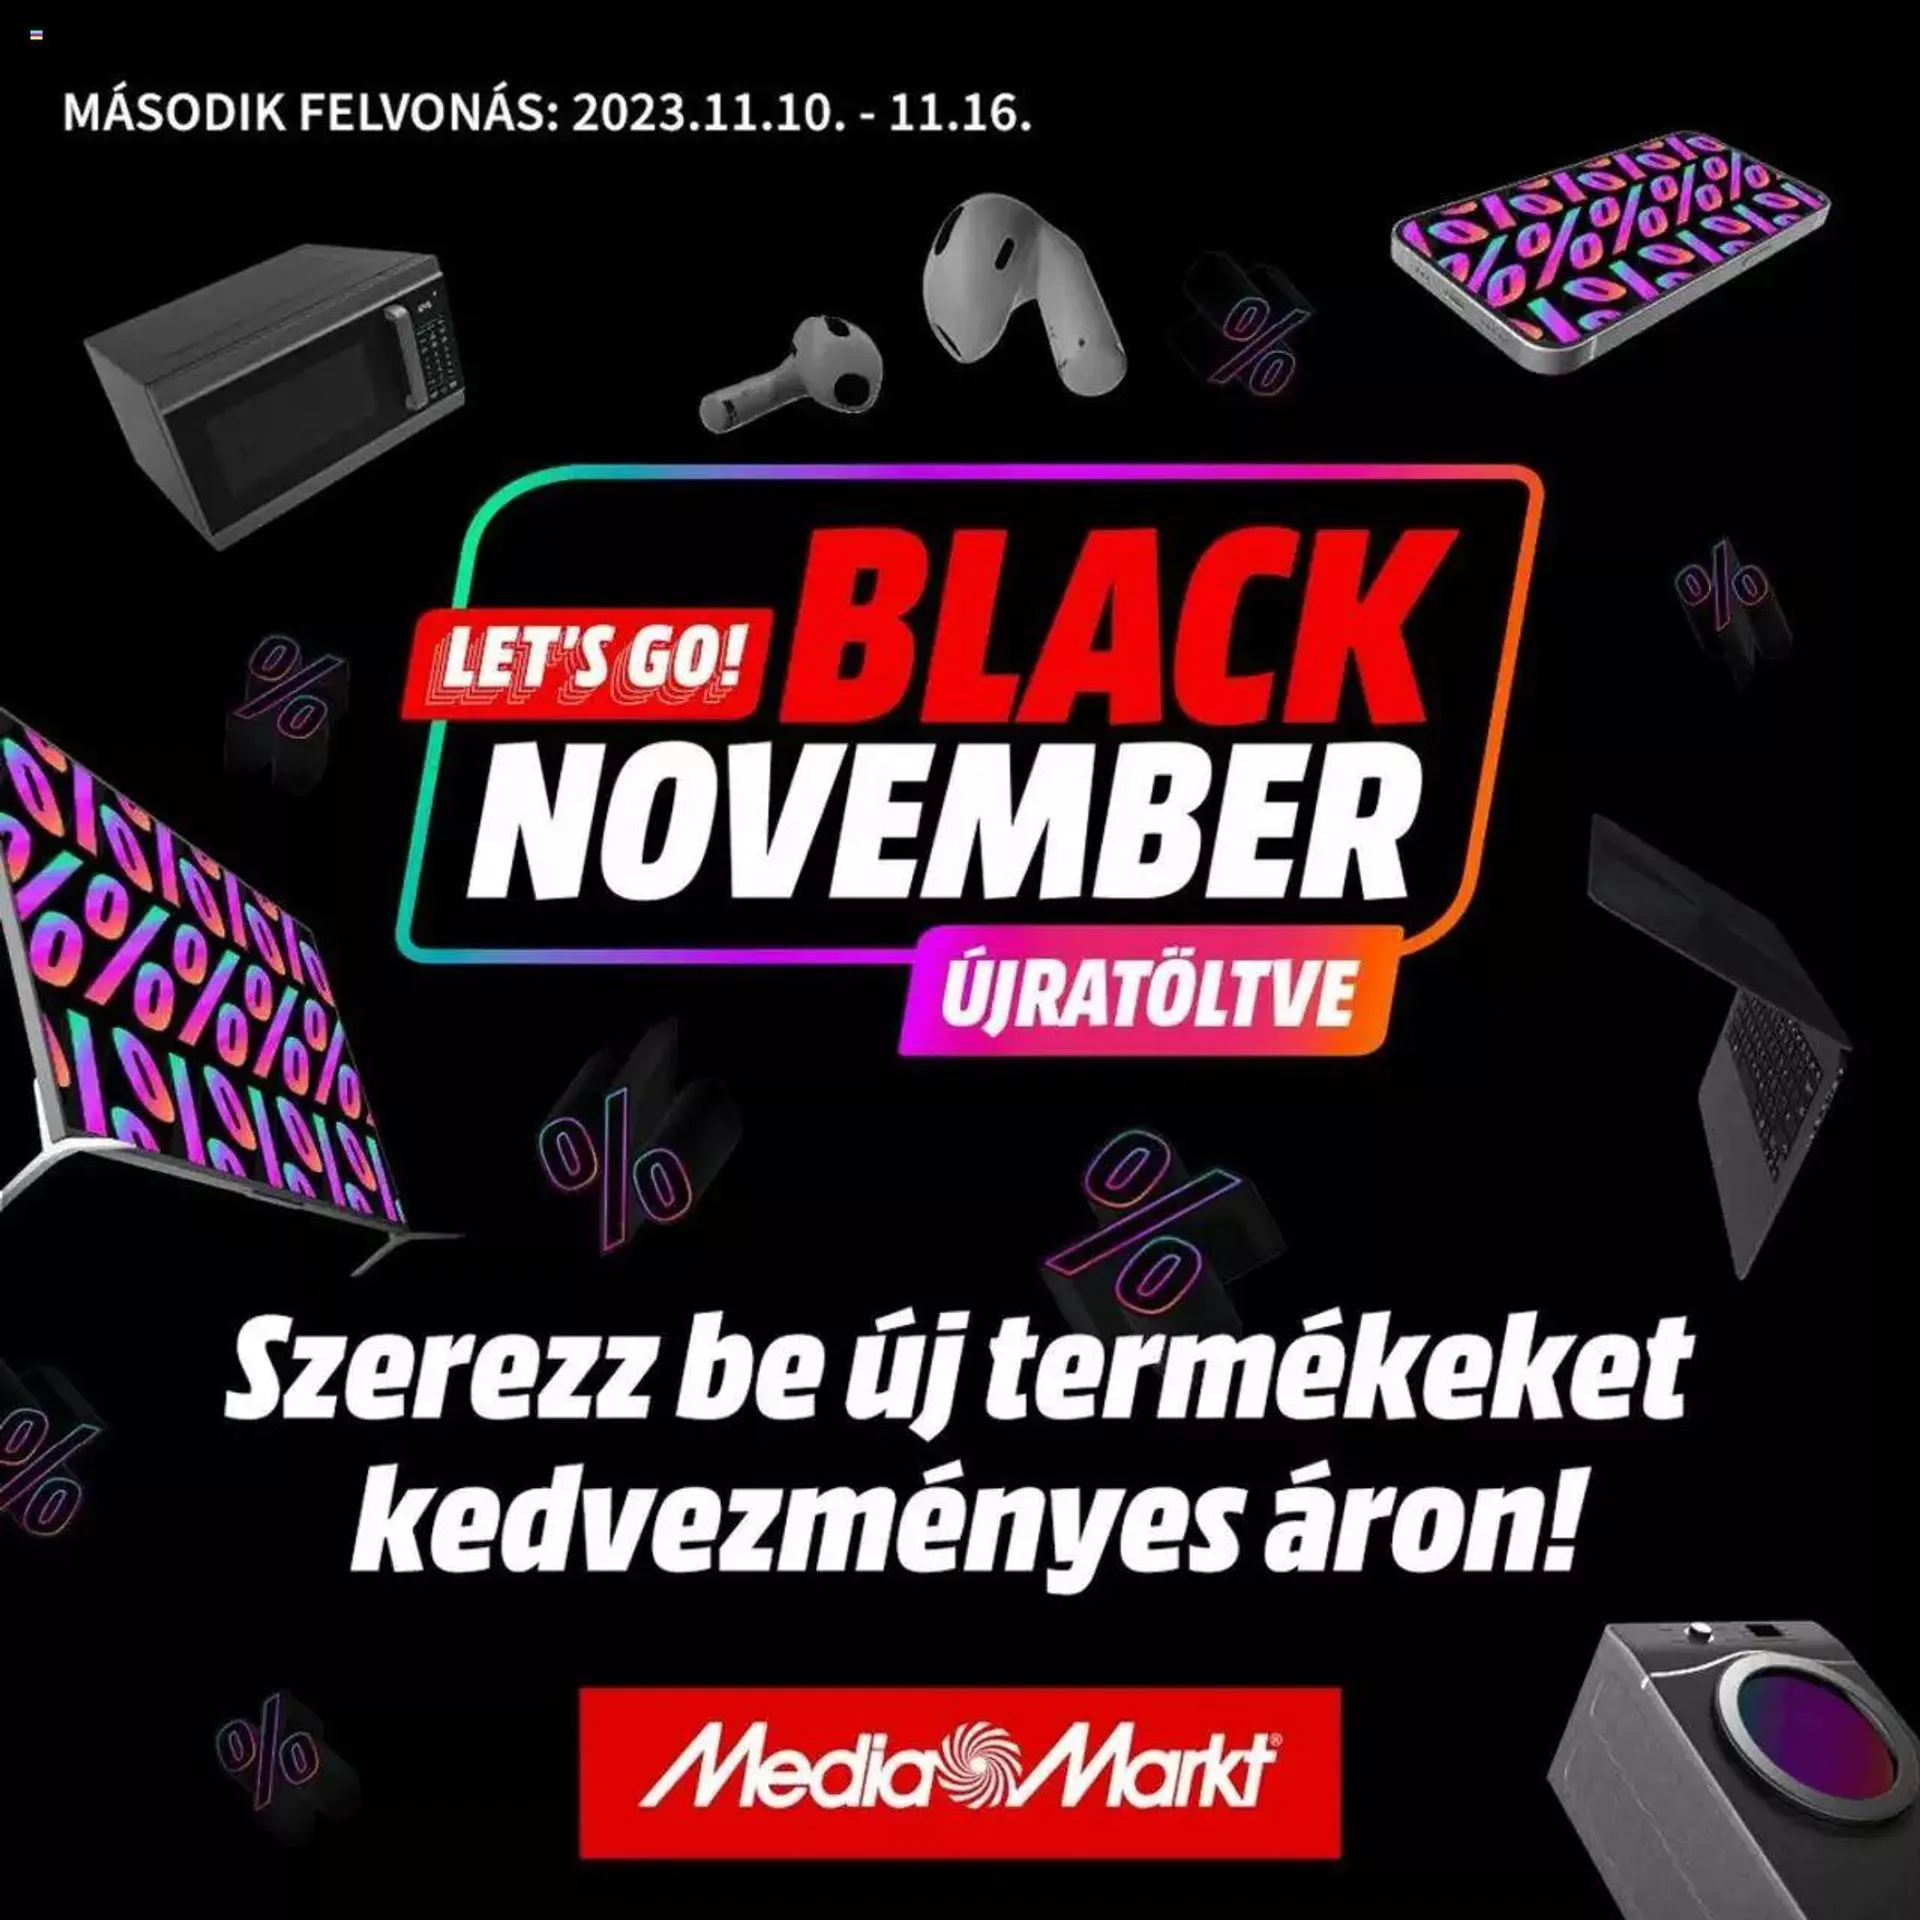 Media Markt - Black November értesítés